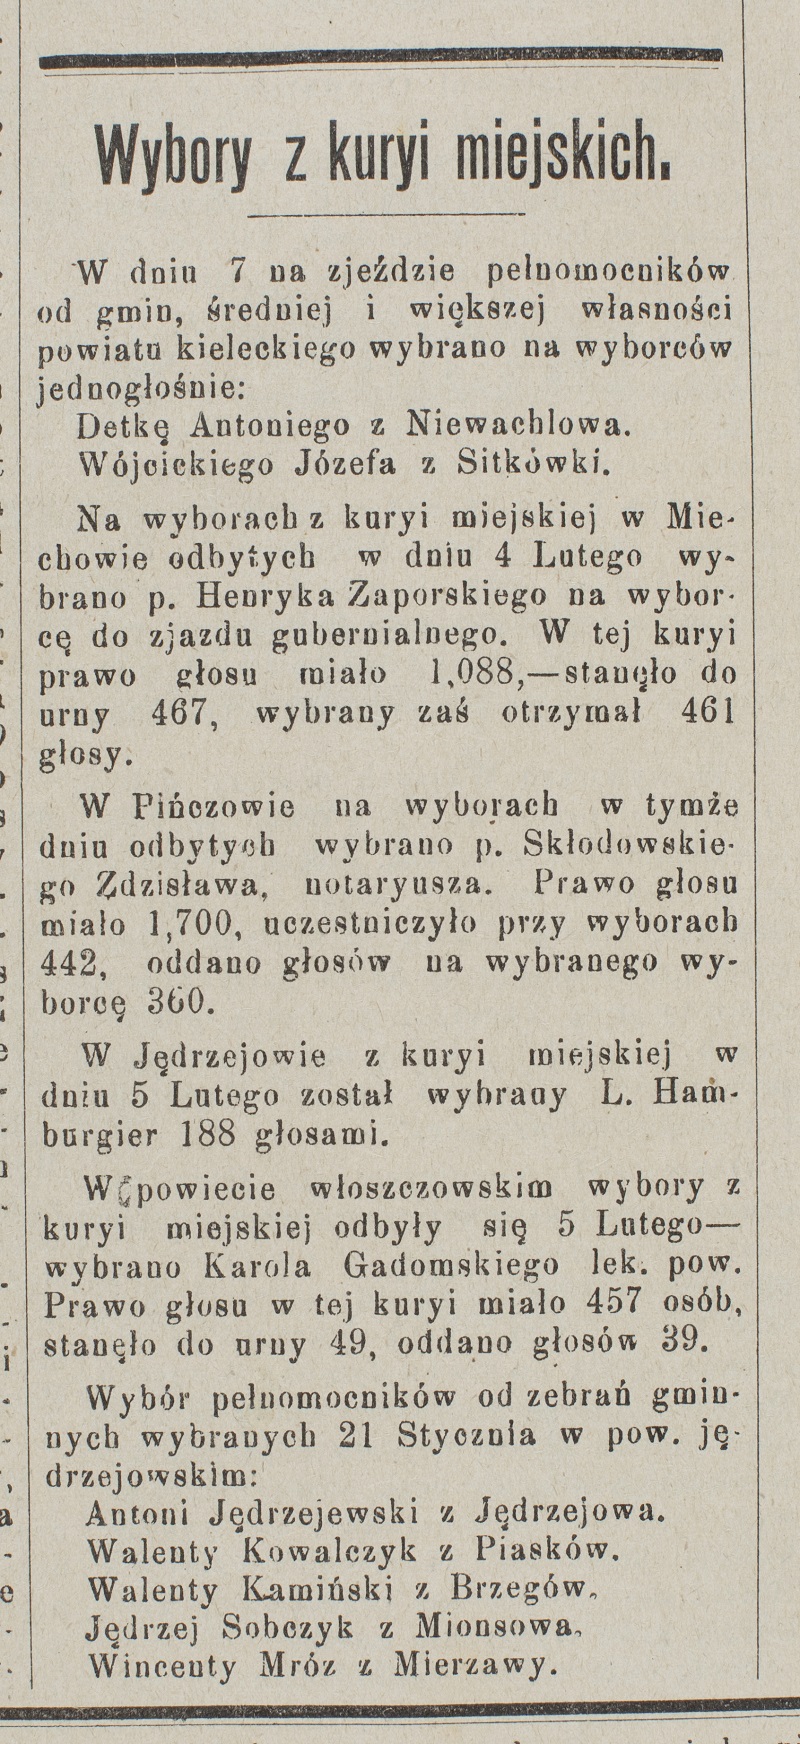  [Wybory do Drugiej Dumy], „Gazeta Kielecka” 1907, nr 12, s. 2